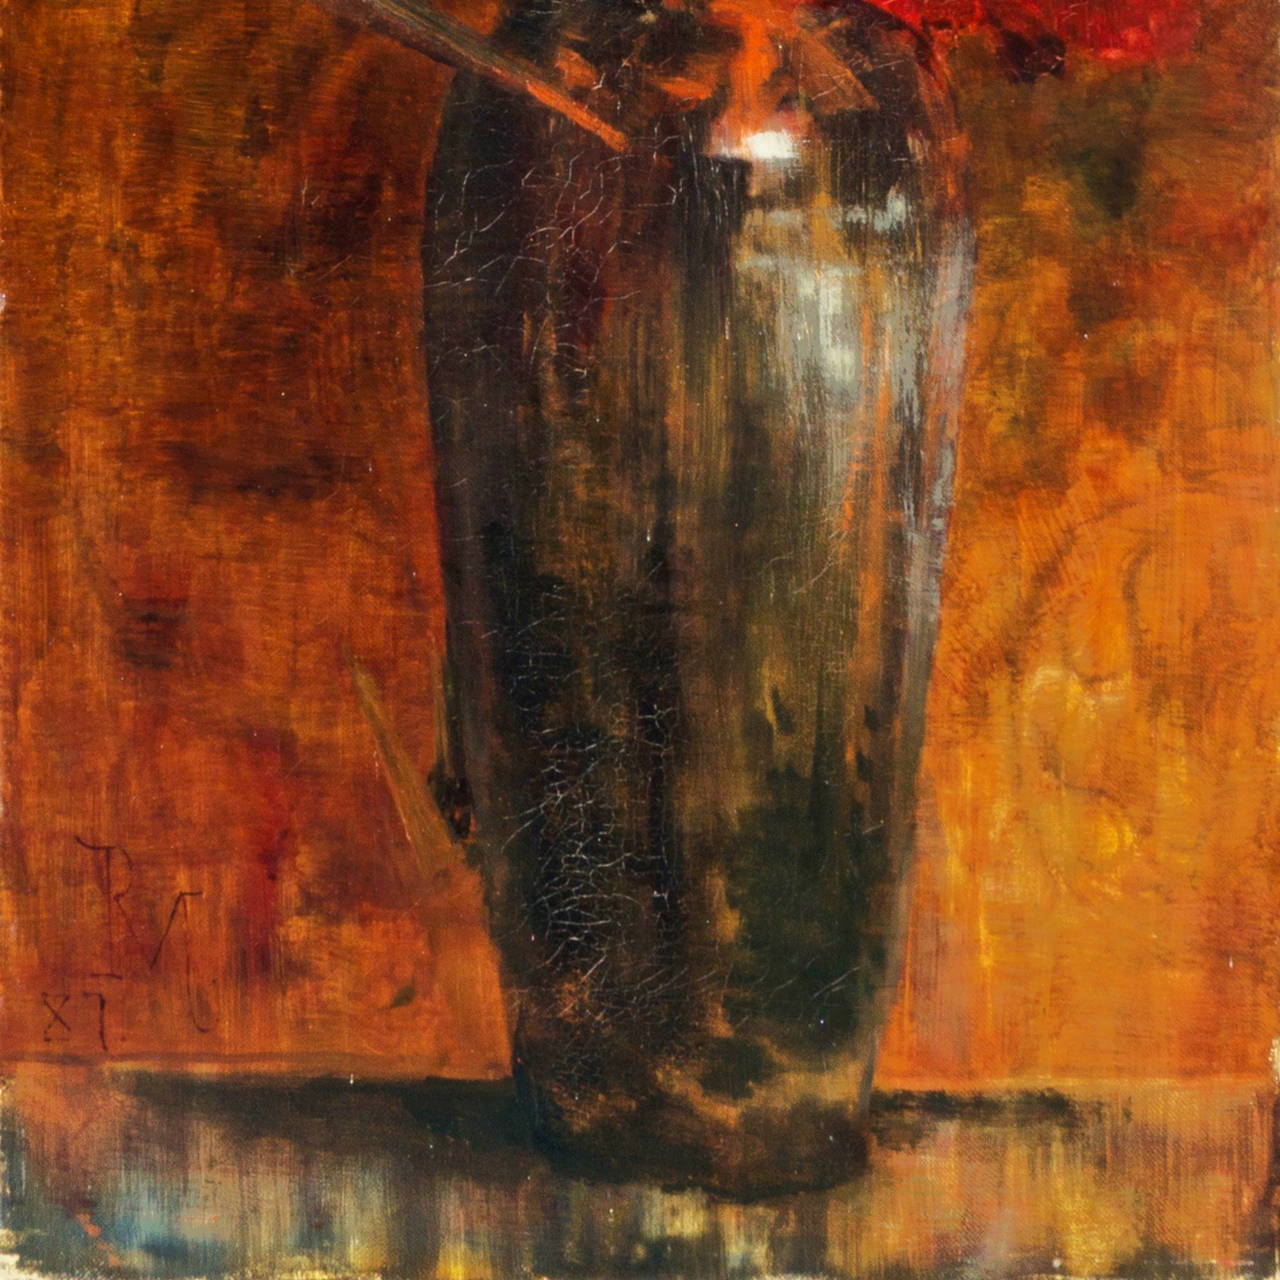 Red Gladioli in einer chinesischen Vase, Stillleben der Knstlerin der sthetizismus (Ästhetizismus), Painting, von Rose Marshall